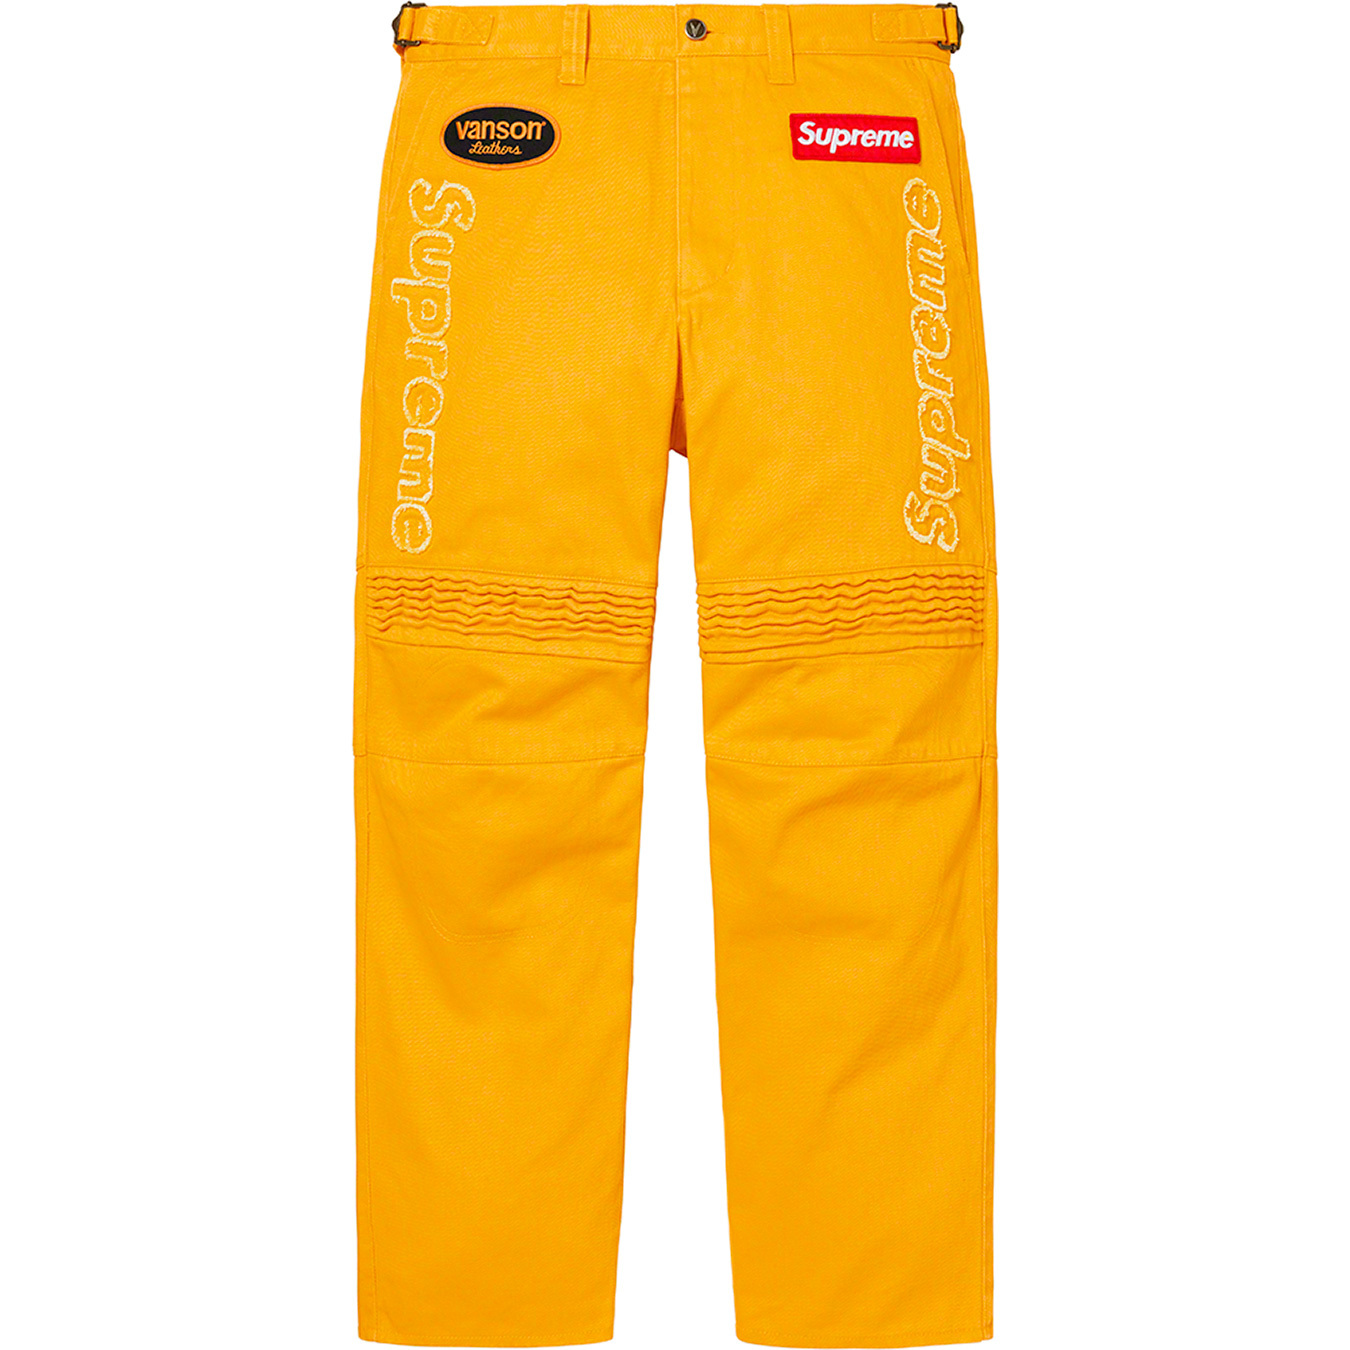 Supreme®/Vanson Leathers® Cordura® Denim Racing Pant